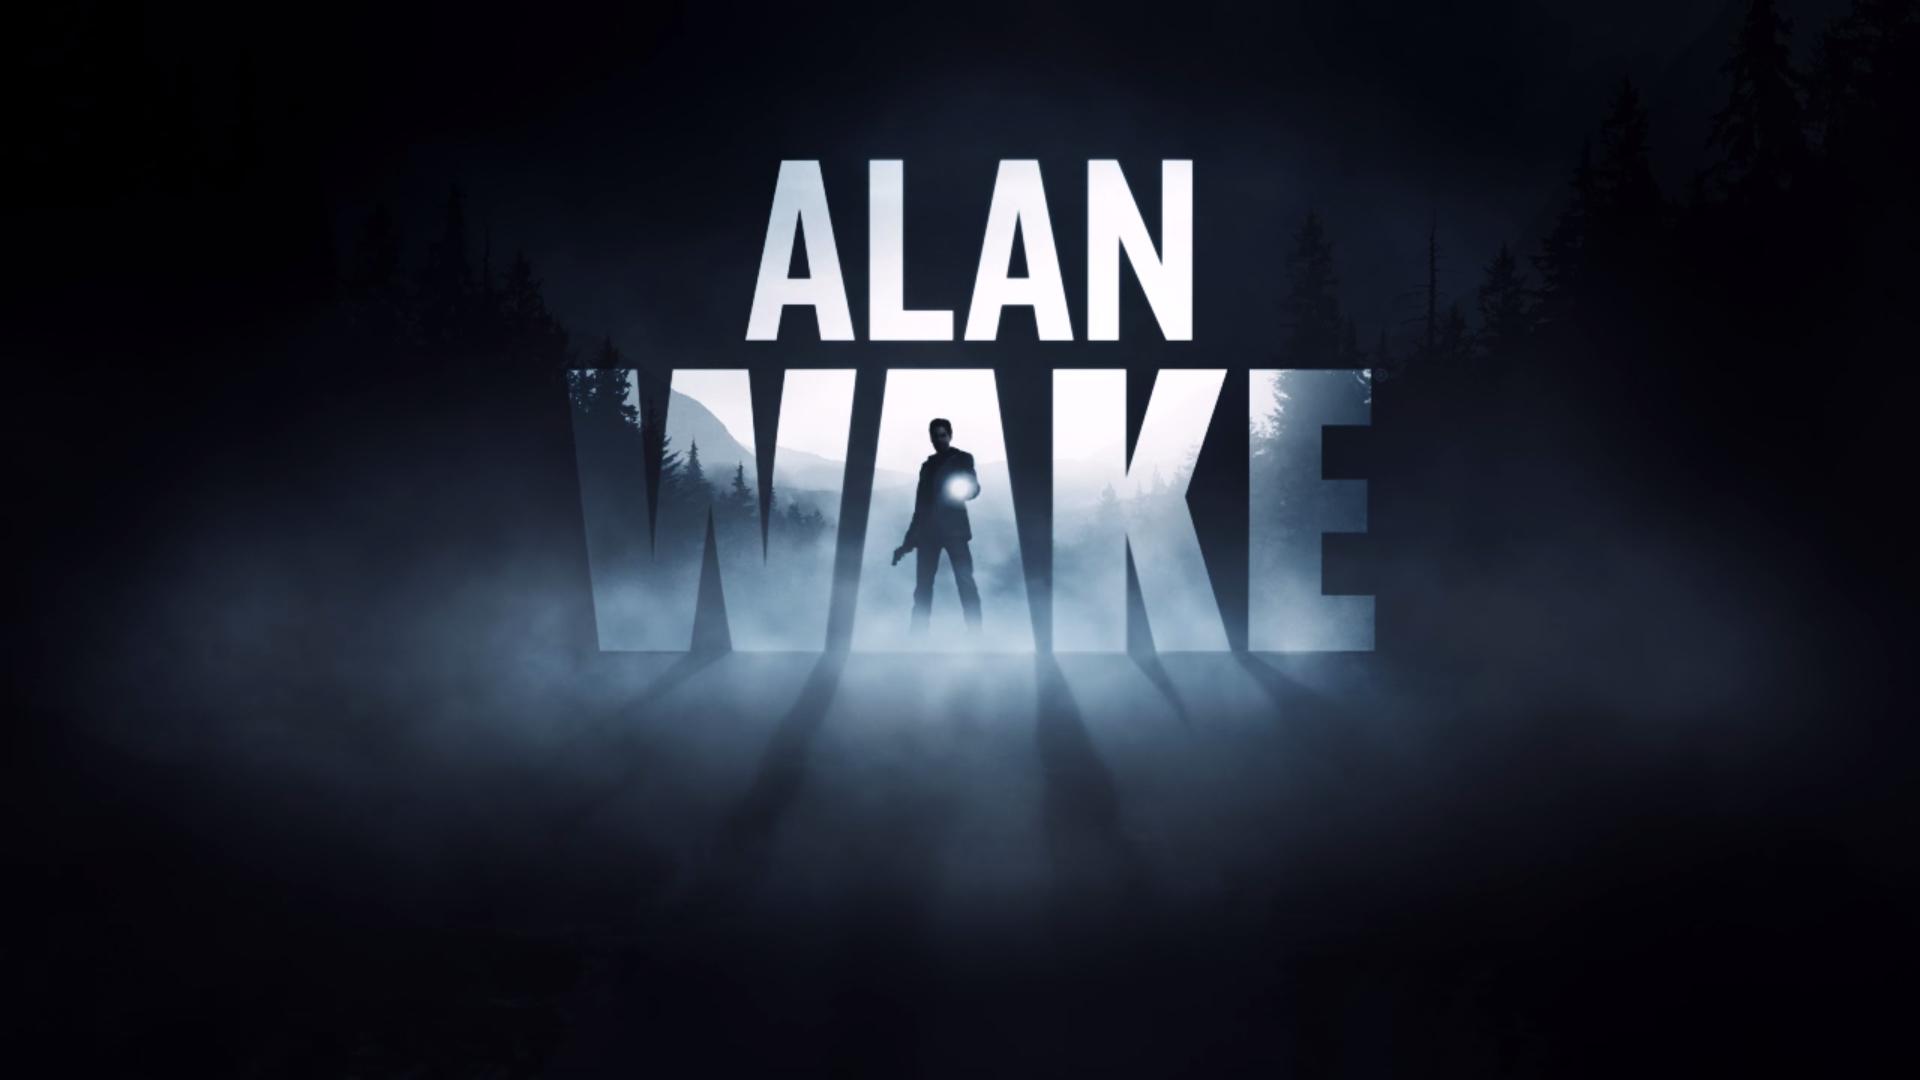 alan wake 2 actor